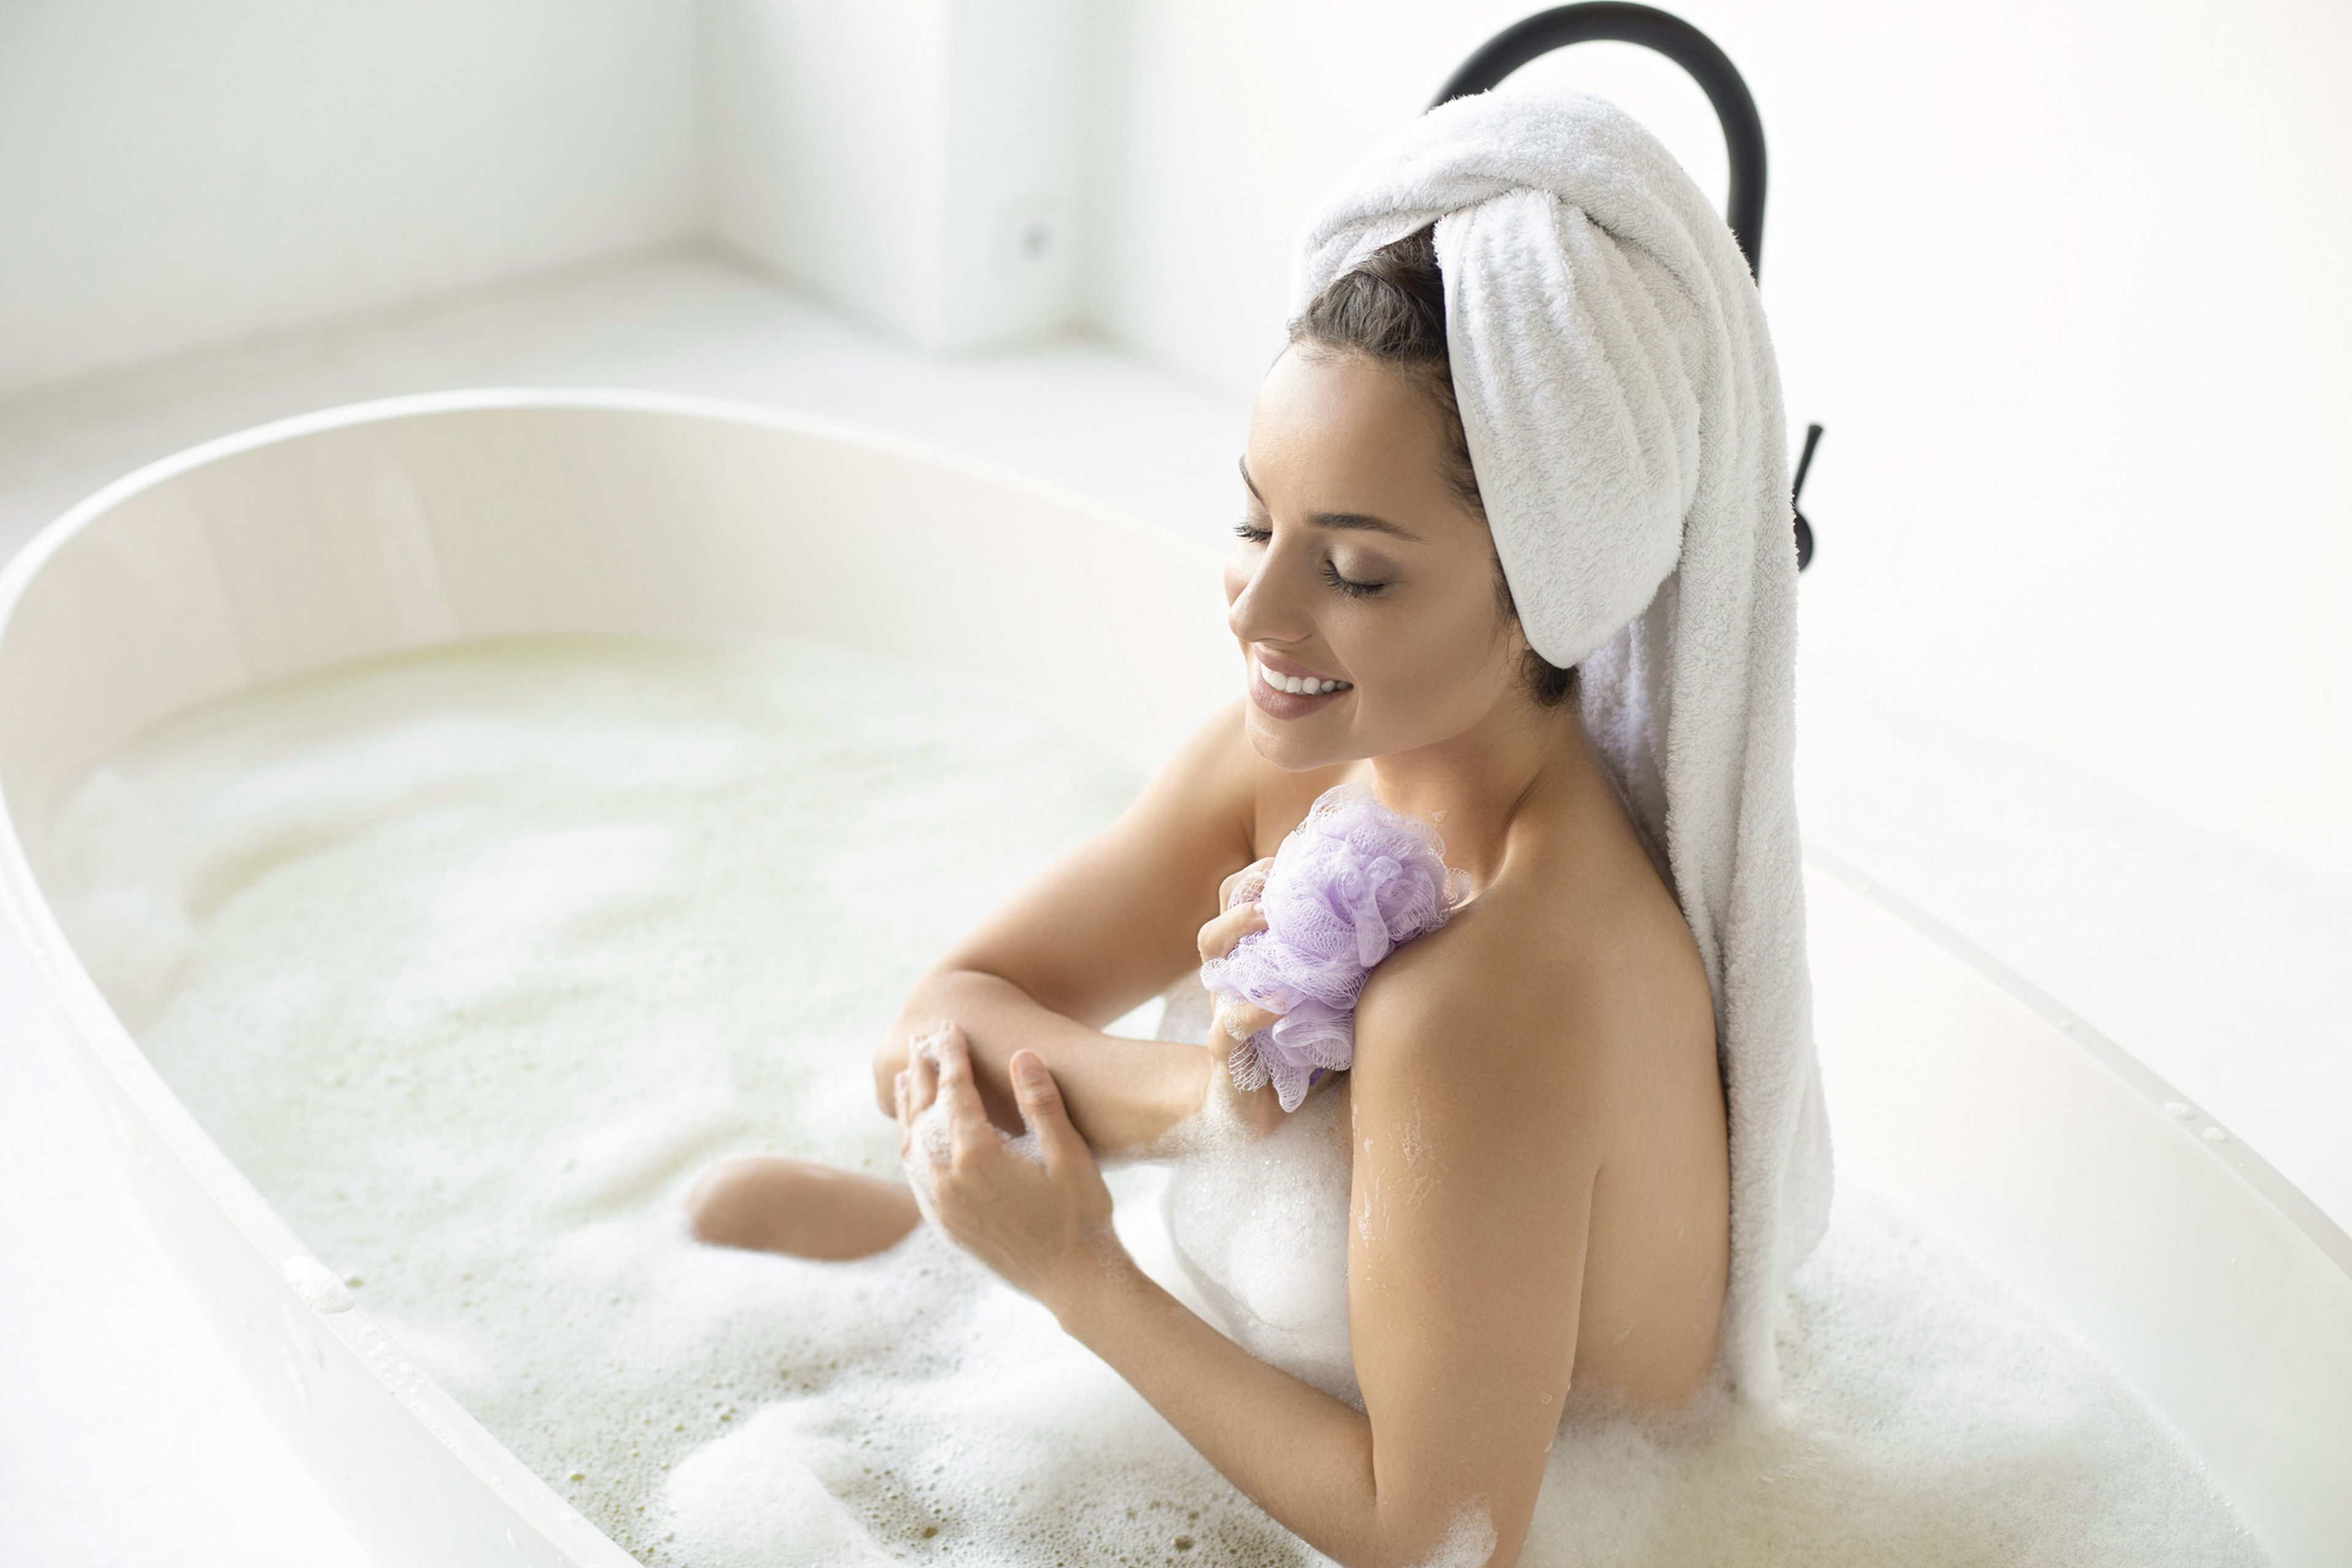 Mujer lavándose con una esponja de baño.